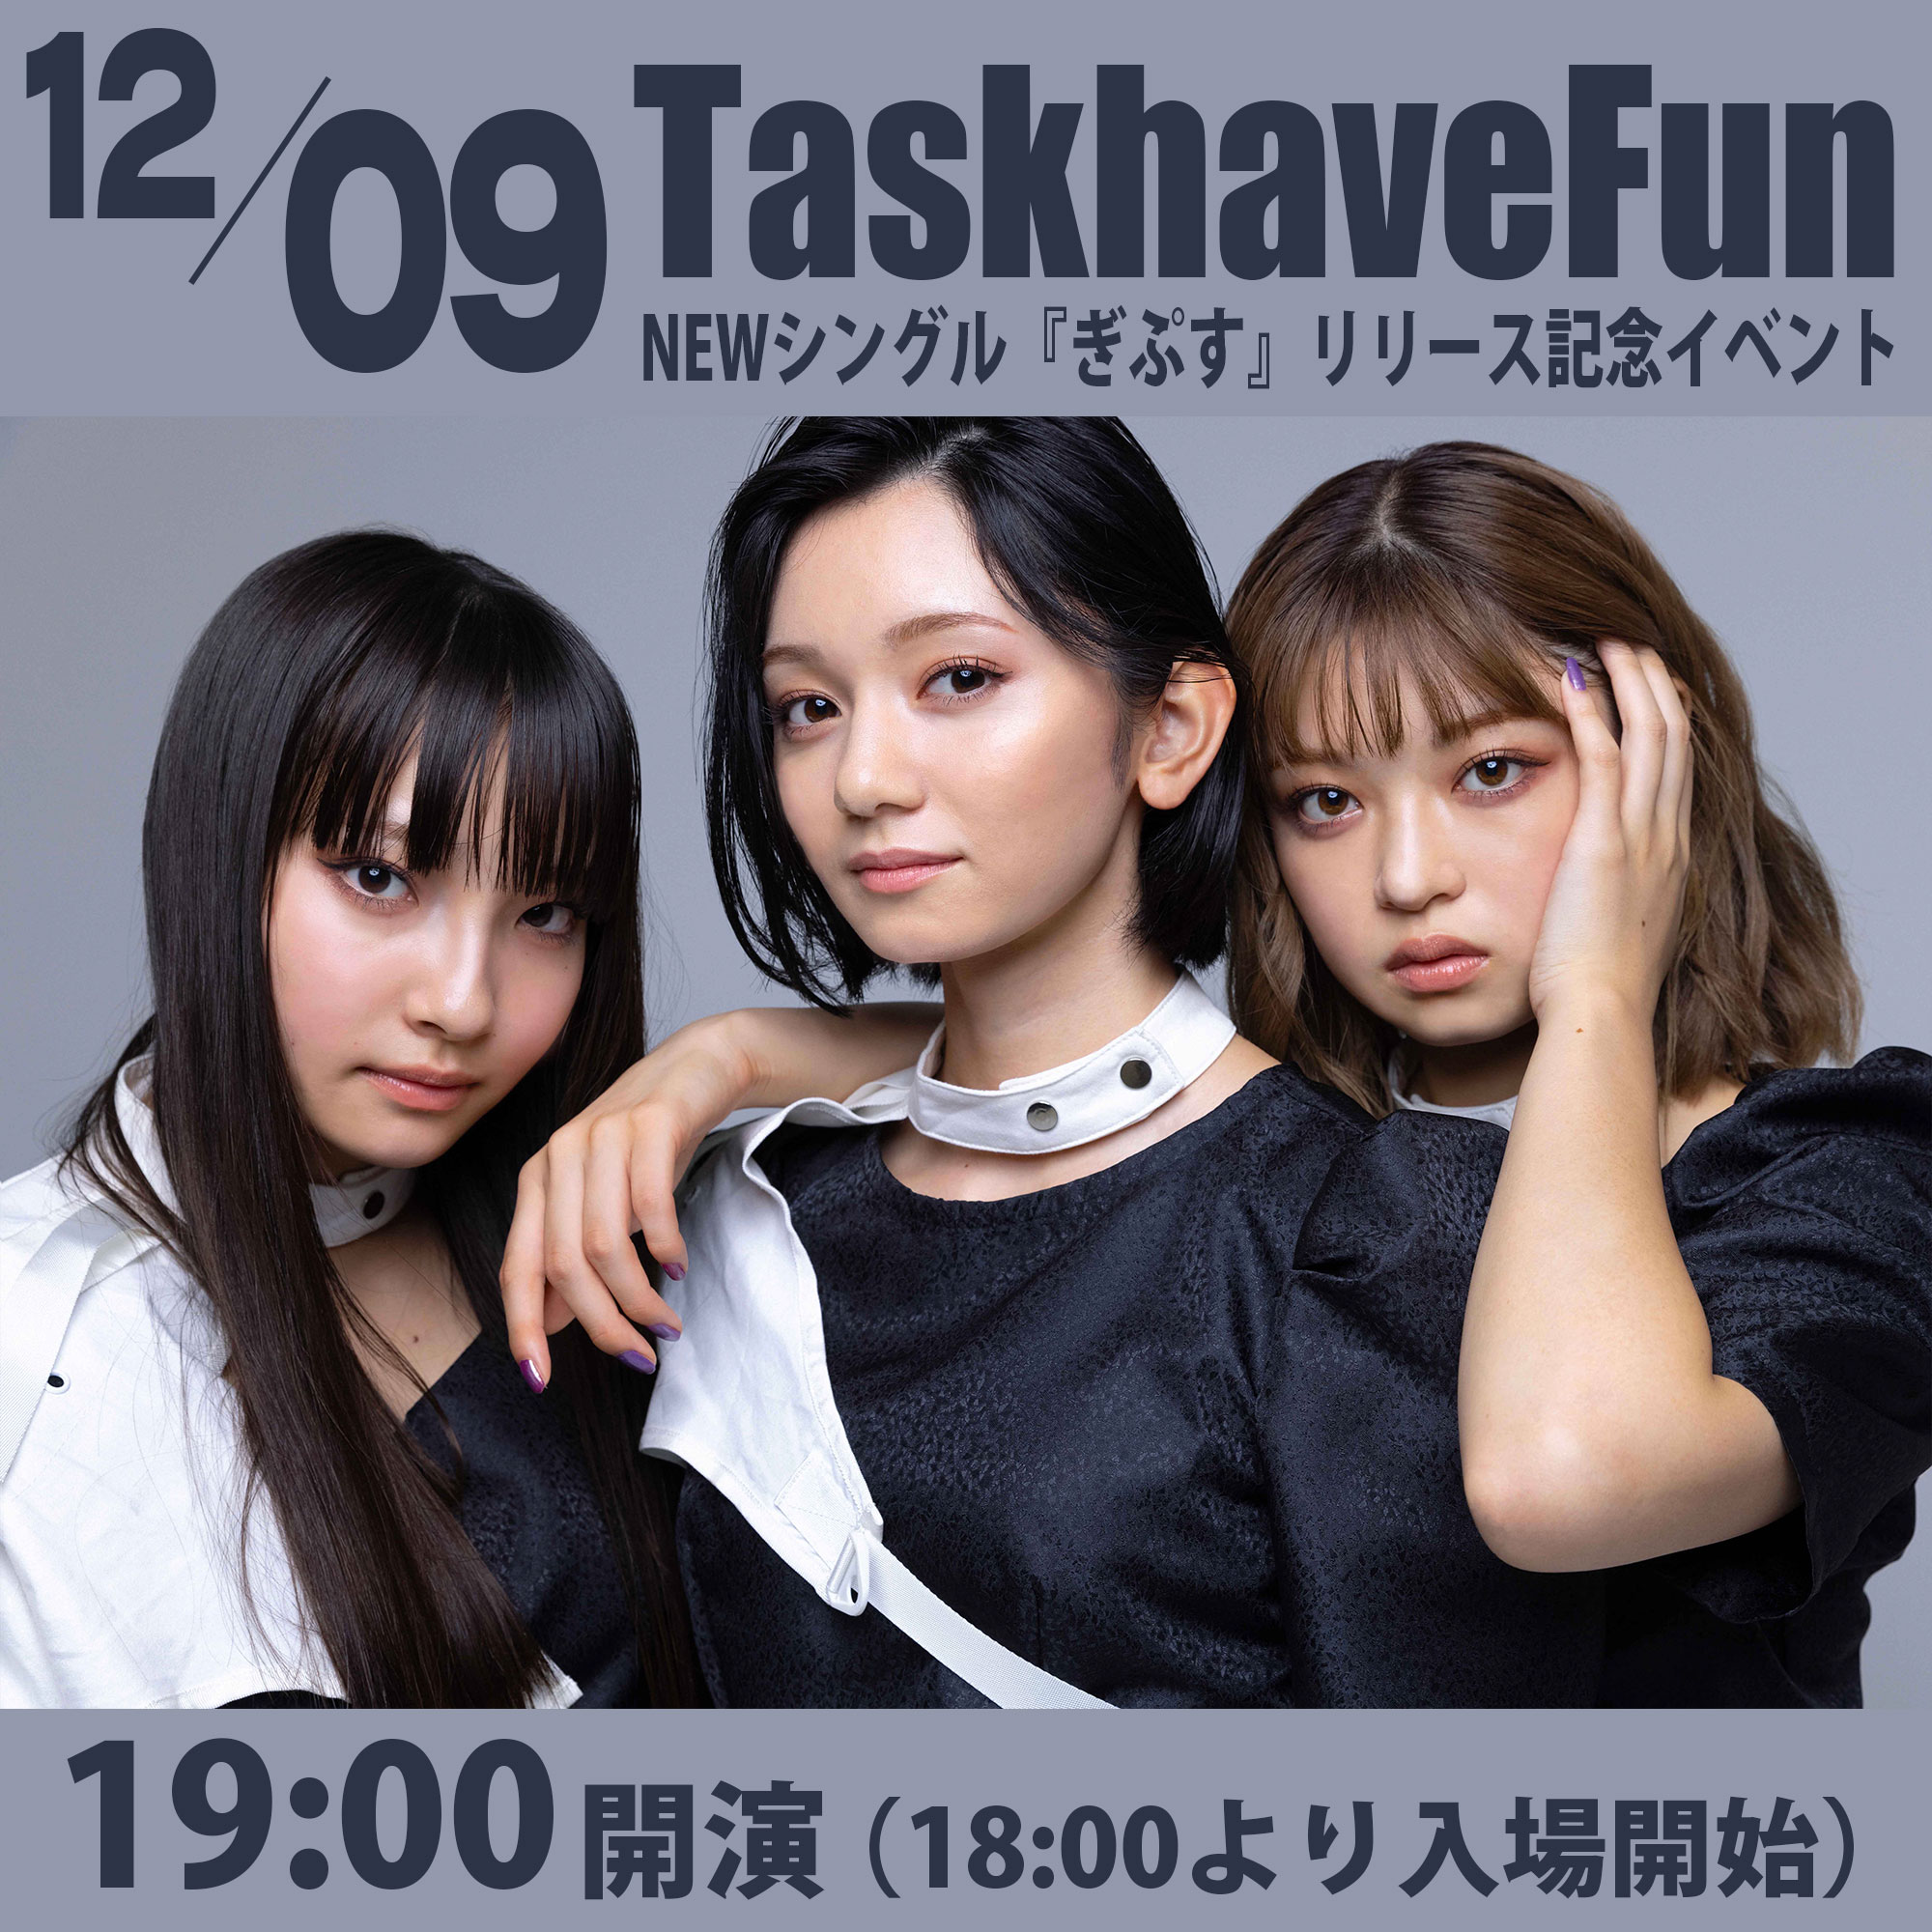 12/9（木）Task have Fun ニューシングル『ぎぷす』リリース記念イベント